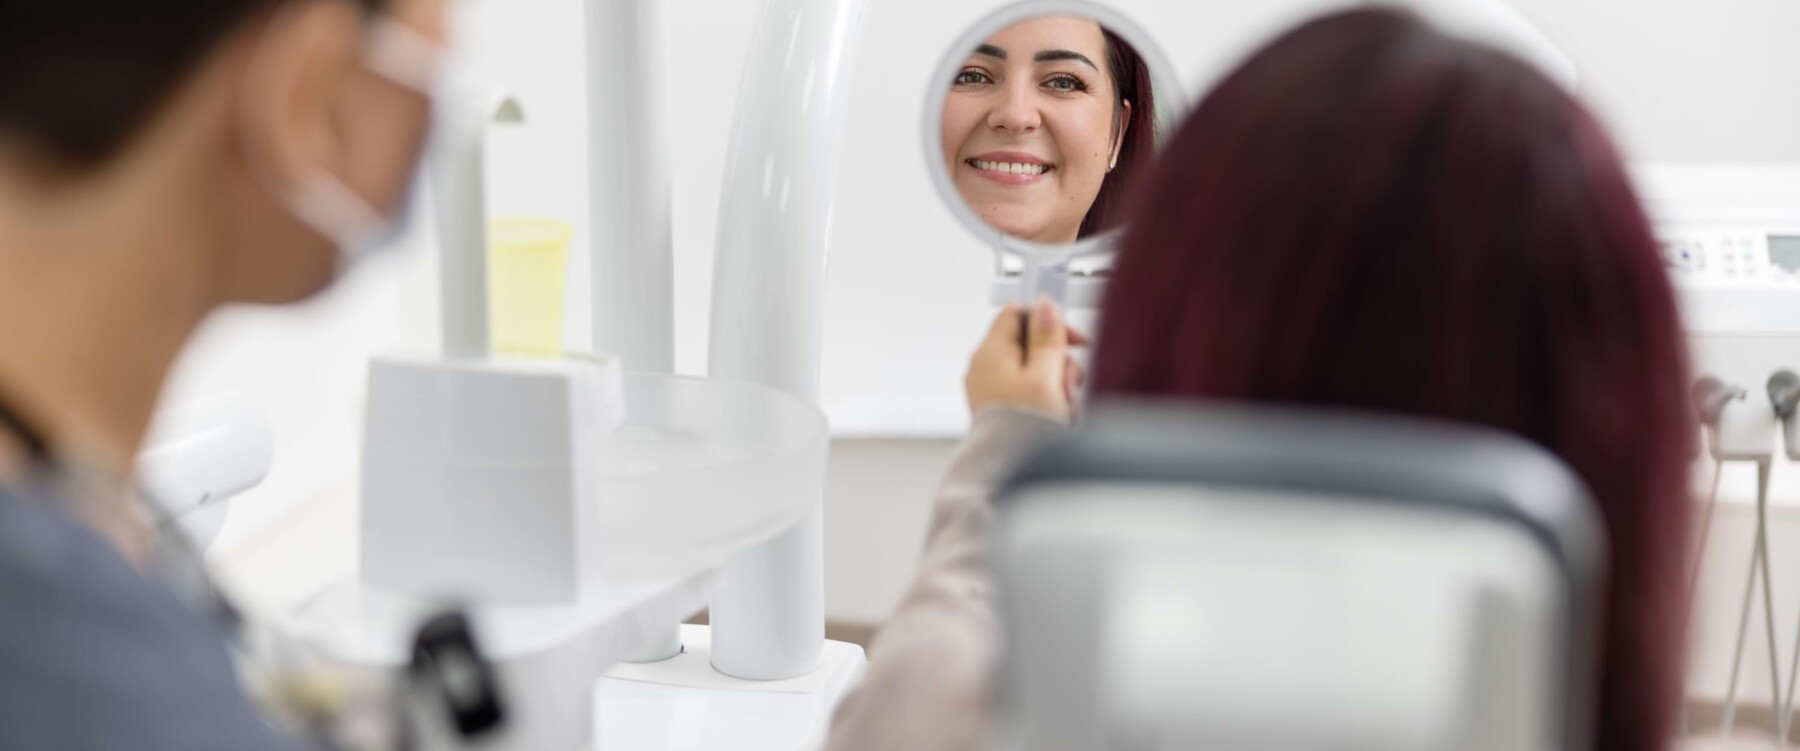 Patientin begutachtet Endergebnis lächelnd im Spiegel